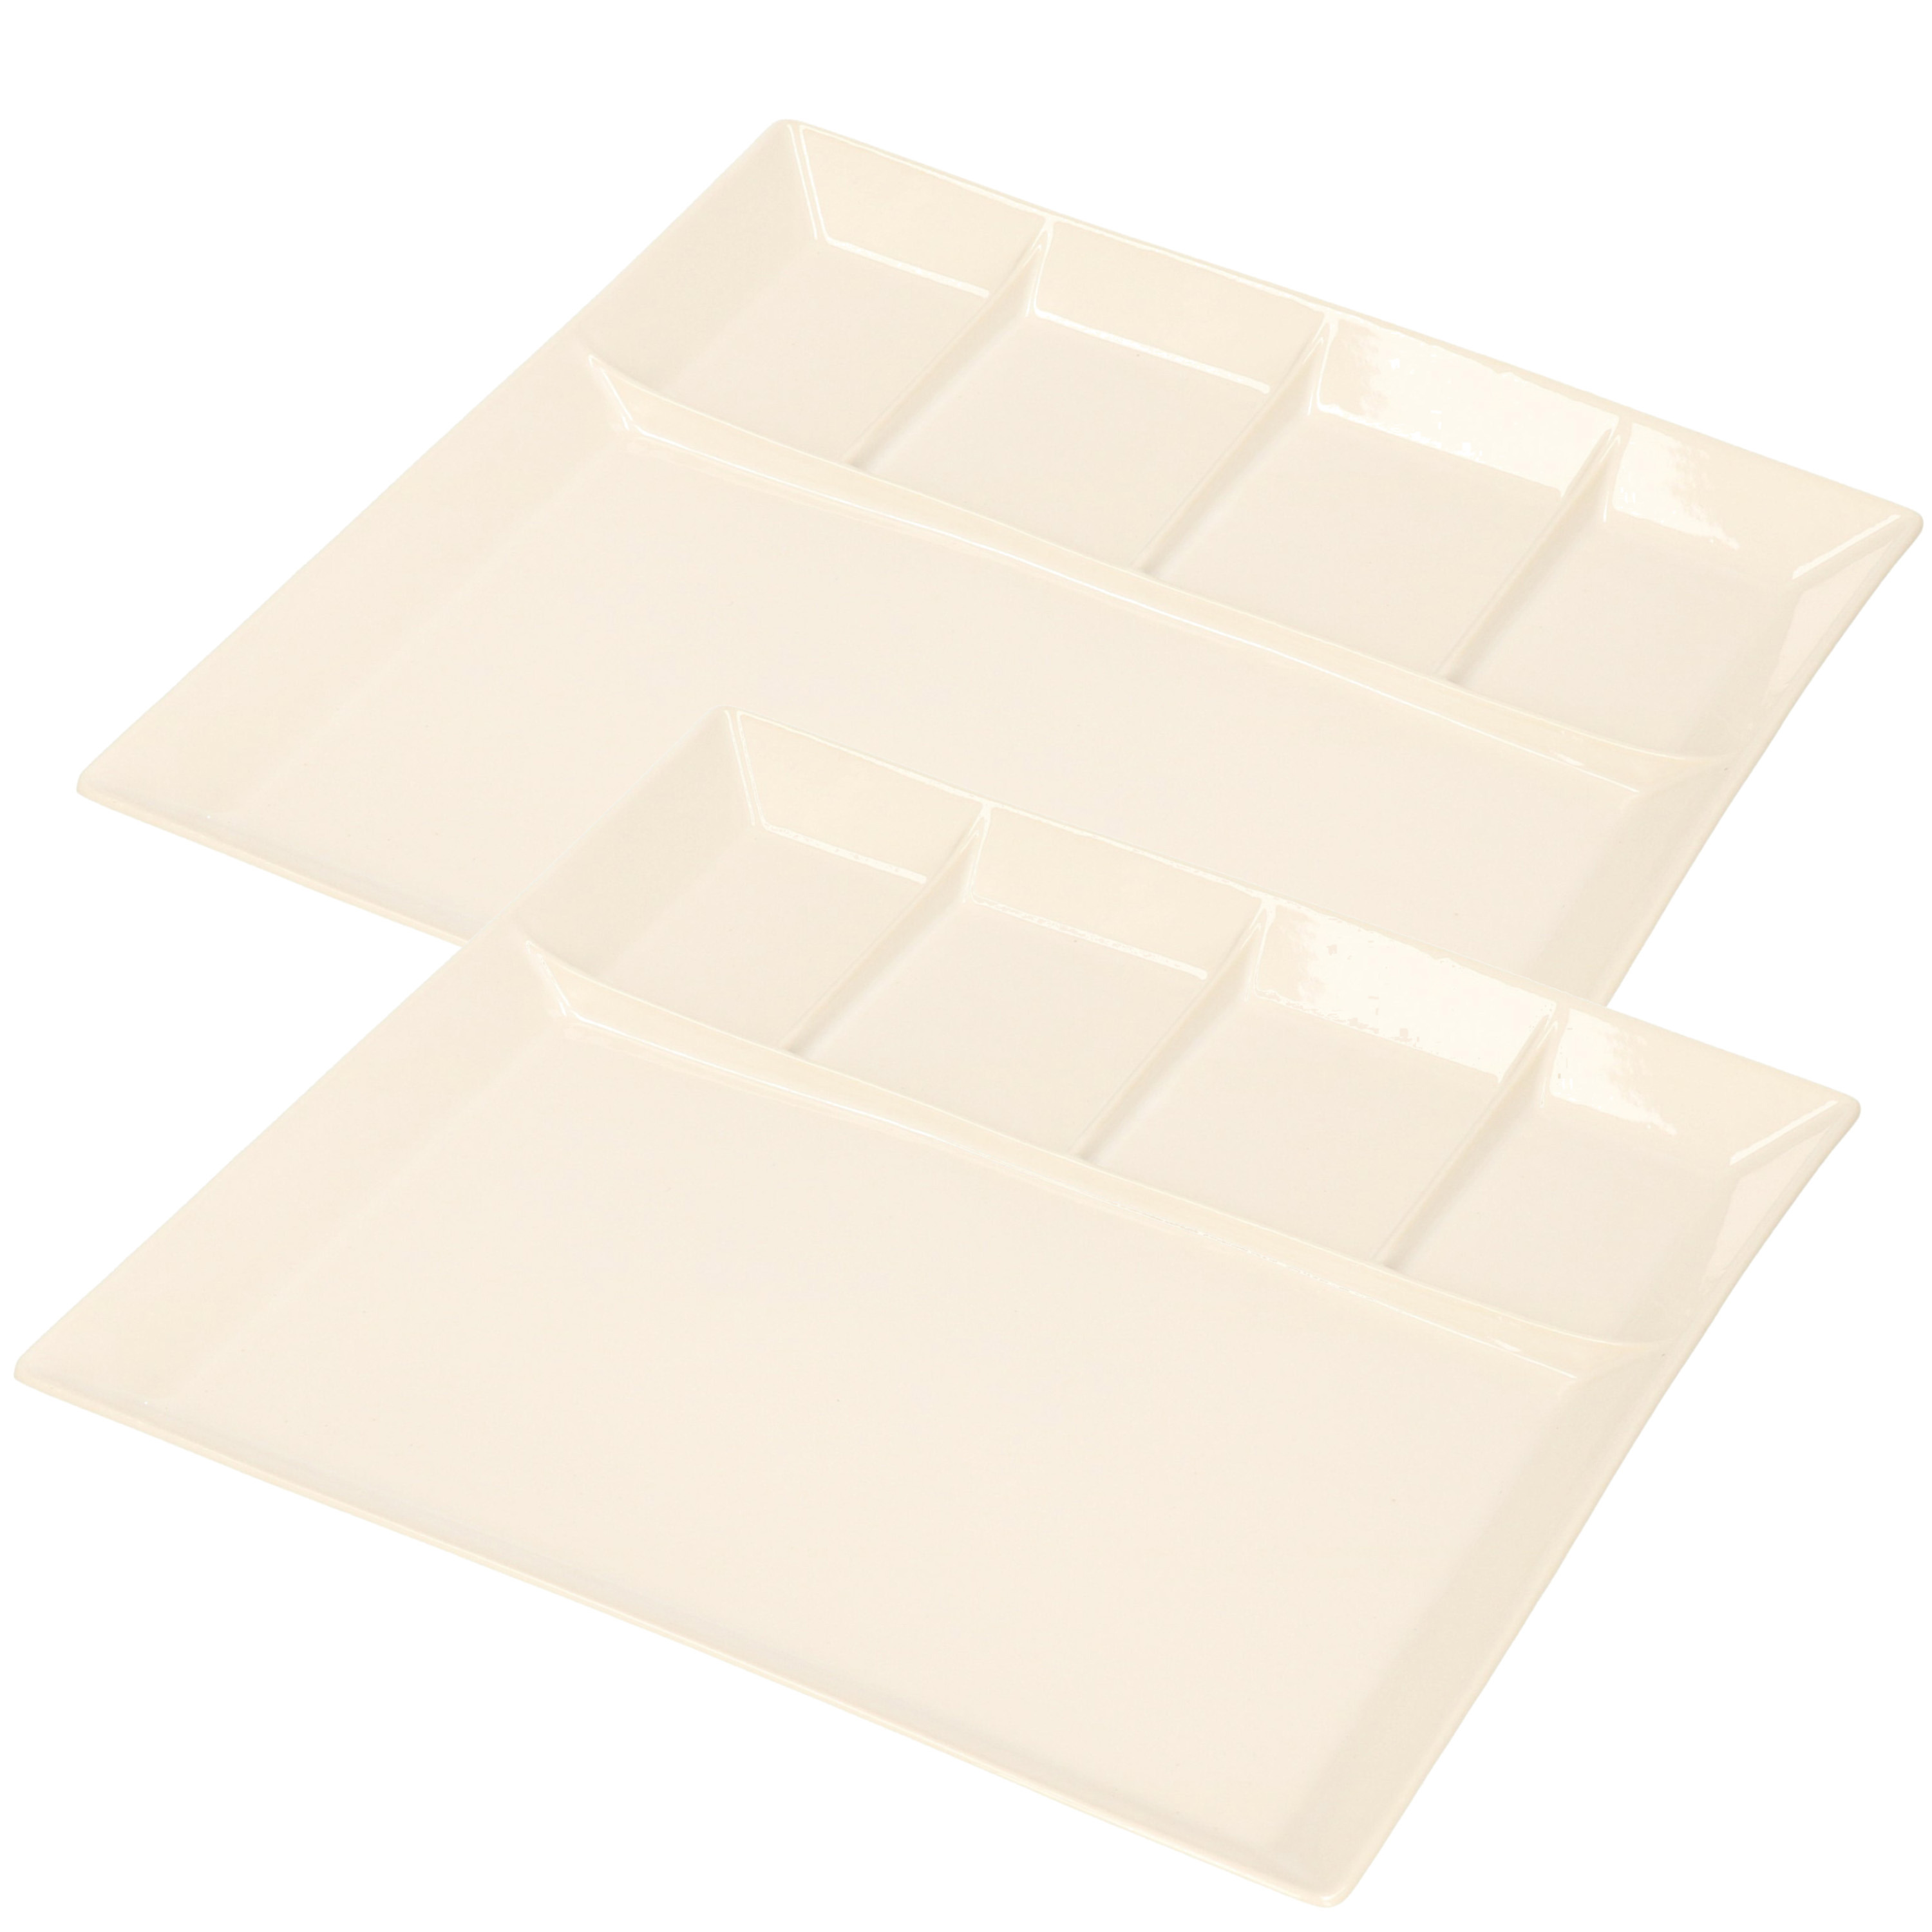 8x stuks wit fondue-gourmet bord 5-vaks vierkant aardewerk 24 cm